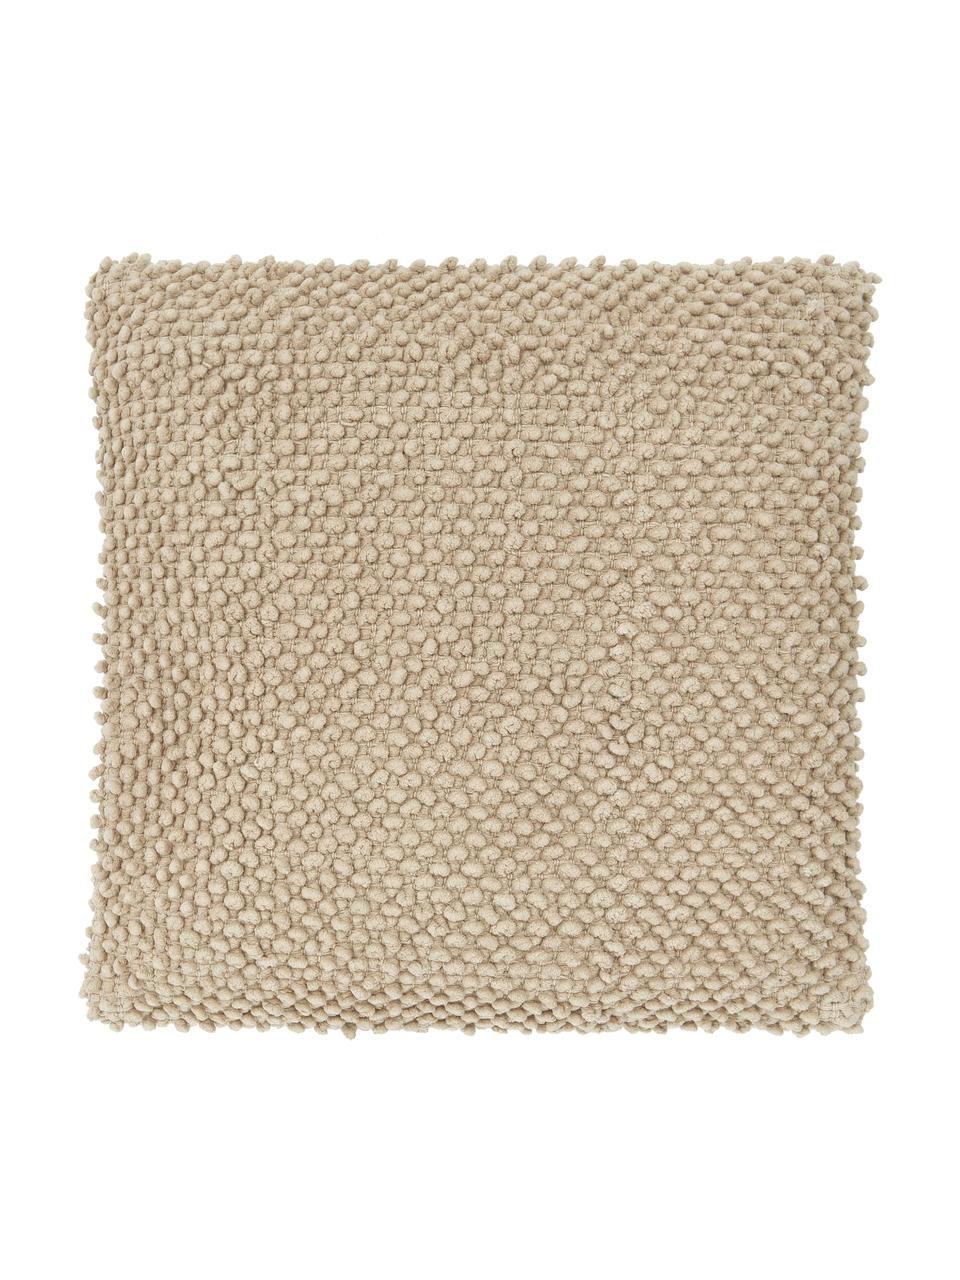 Kissenhülle Indi mit strukturierter Oberfläche in Taupe, 100% Baumwolle, Taupe, B 45 x L 45 cm